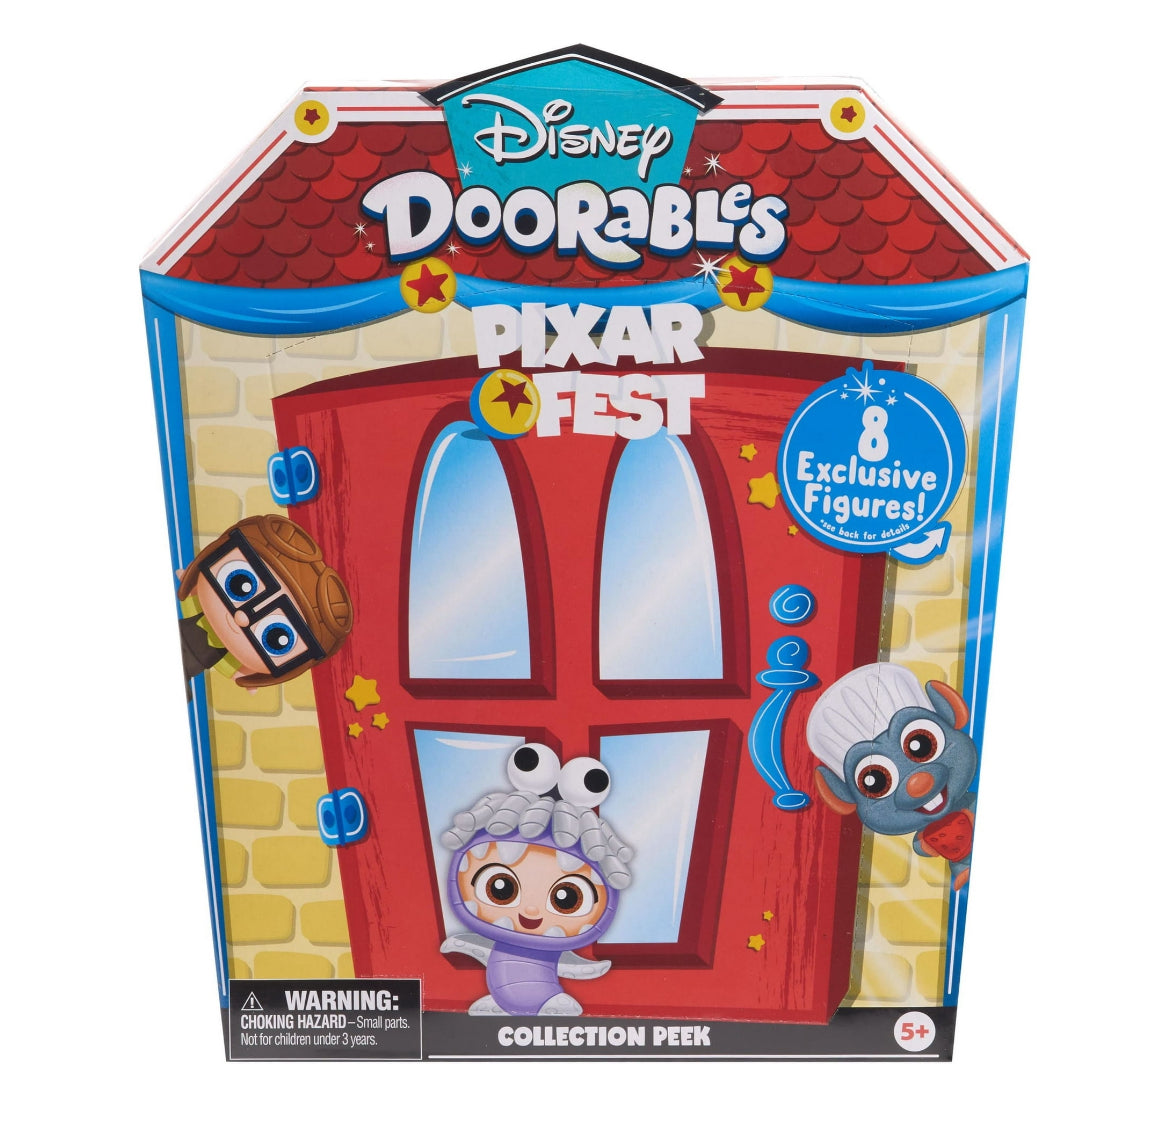  Disney Doorables Disney100 Celebration of Wonder Set